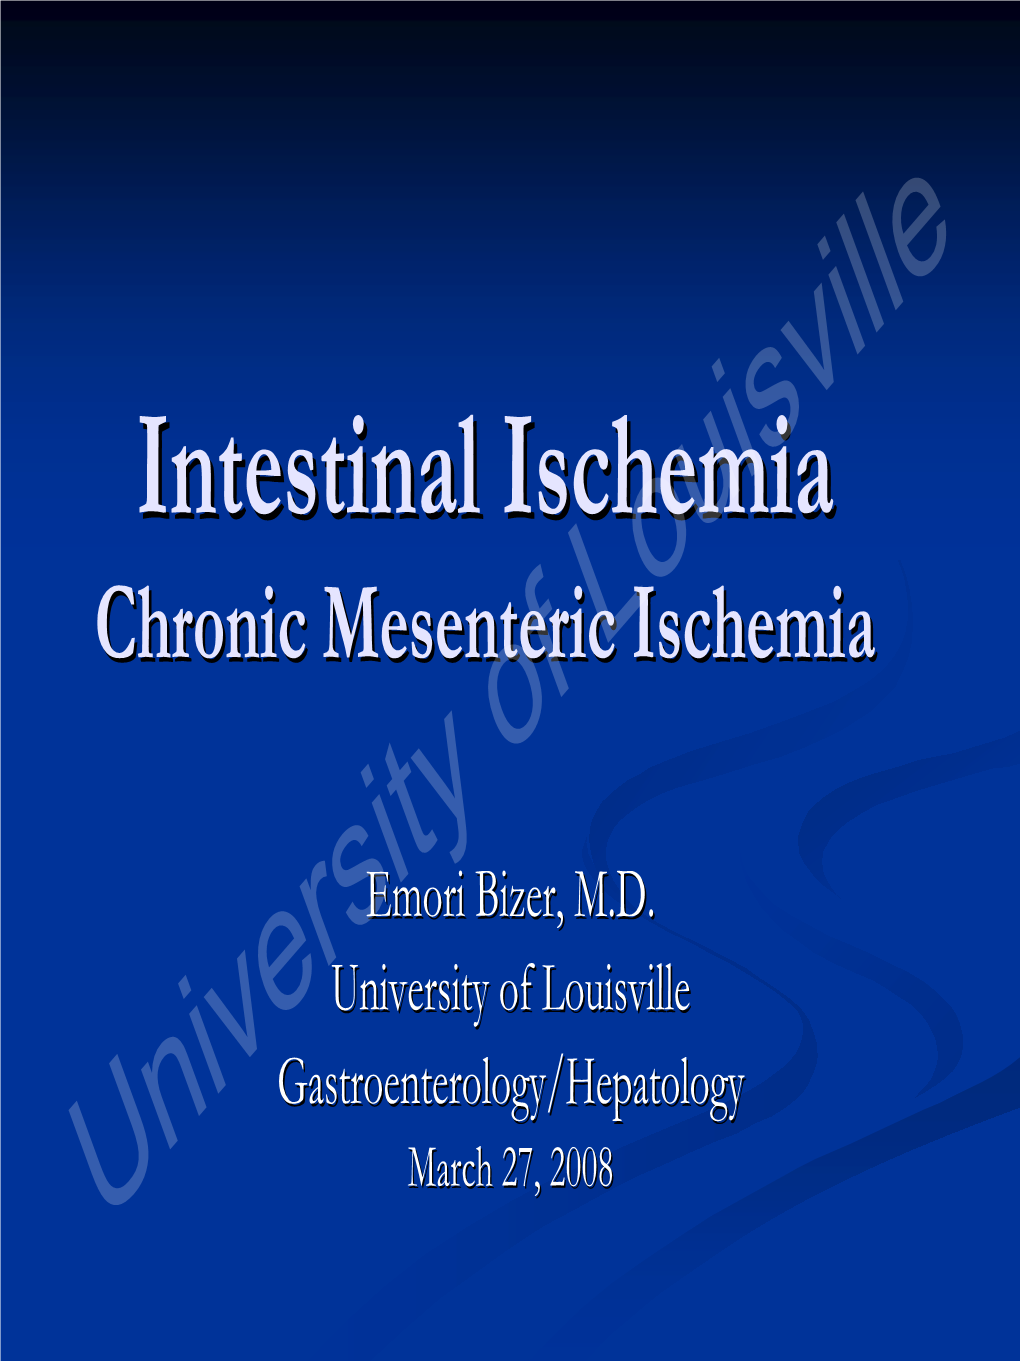 Chronic Mesenteric Ischemia Is: A